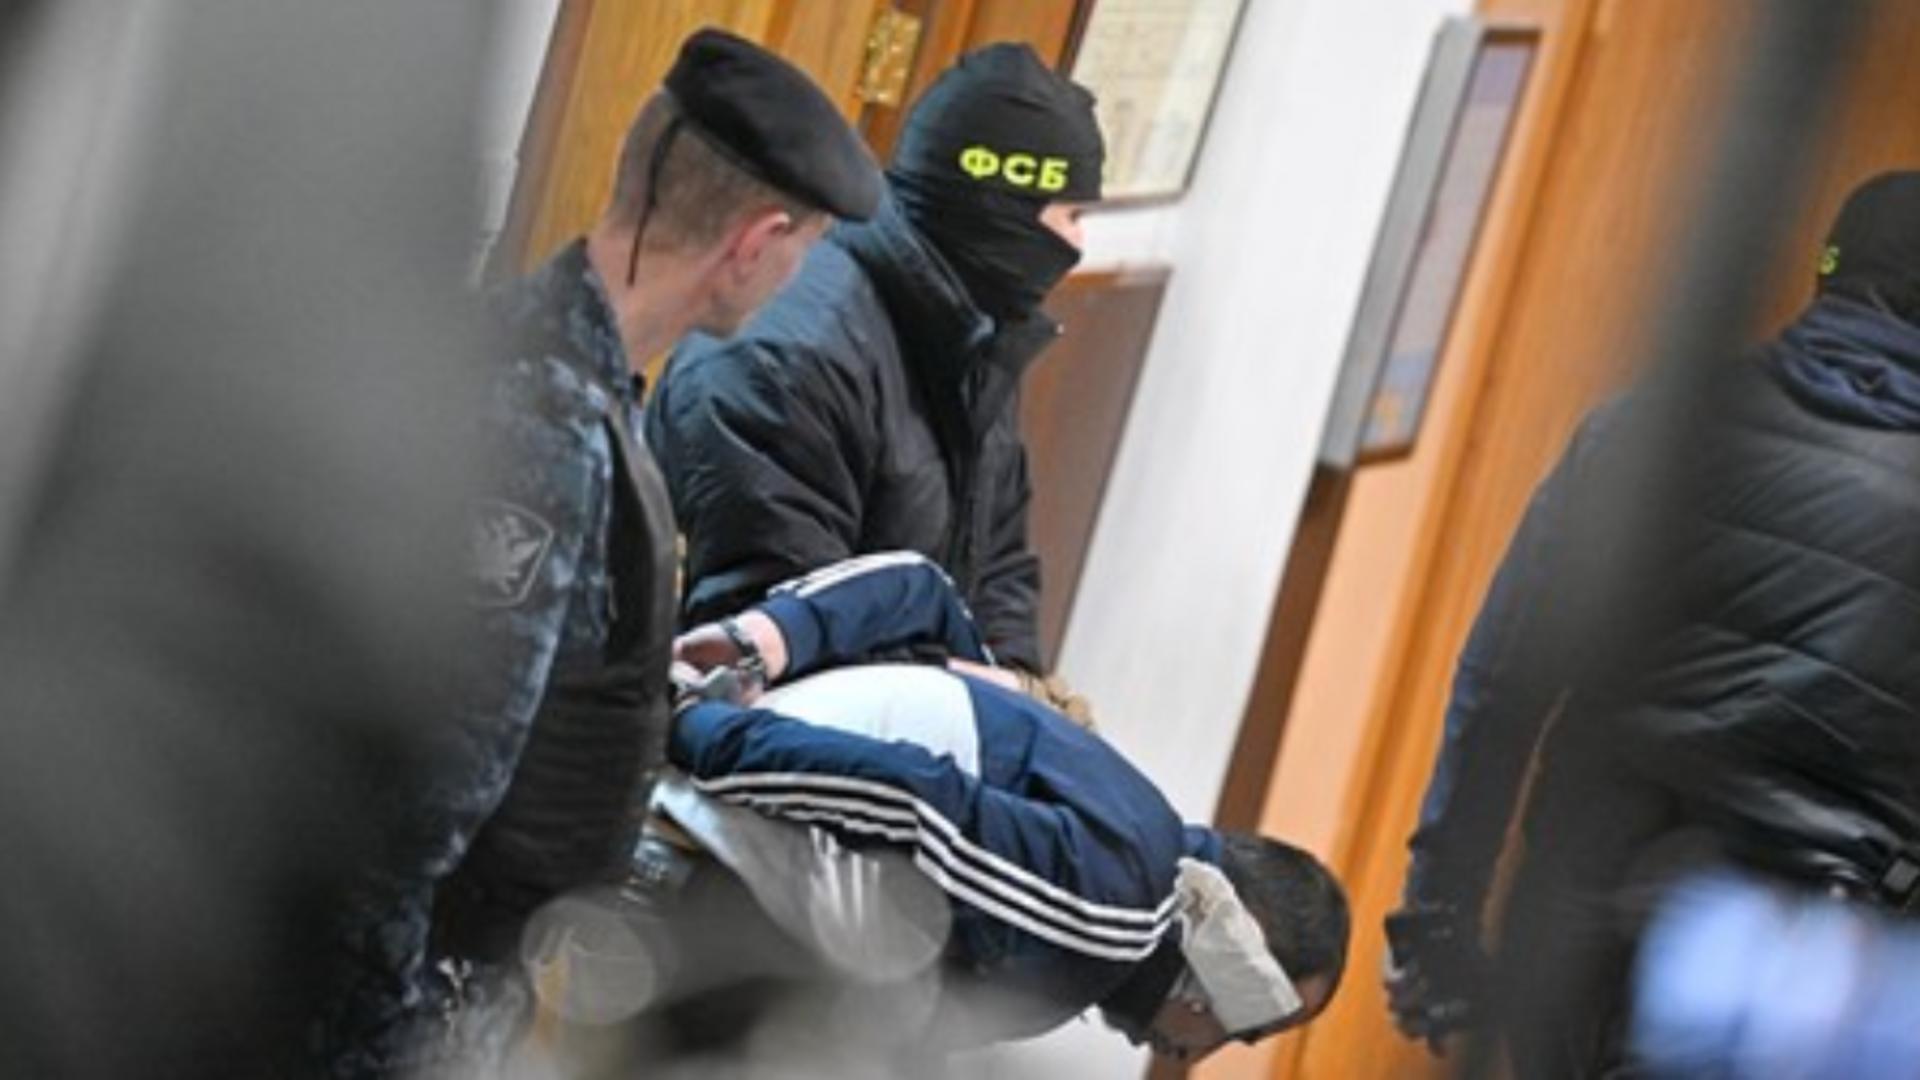 Teroriștii din Rusia, aduși la tribunal bătuți și în agonie. Mărturii șocante despre tortura la care au fost supusi